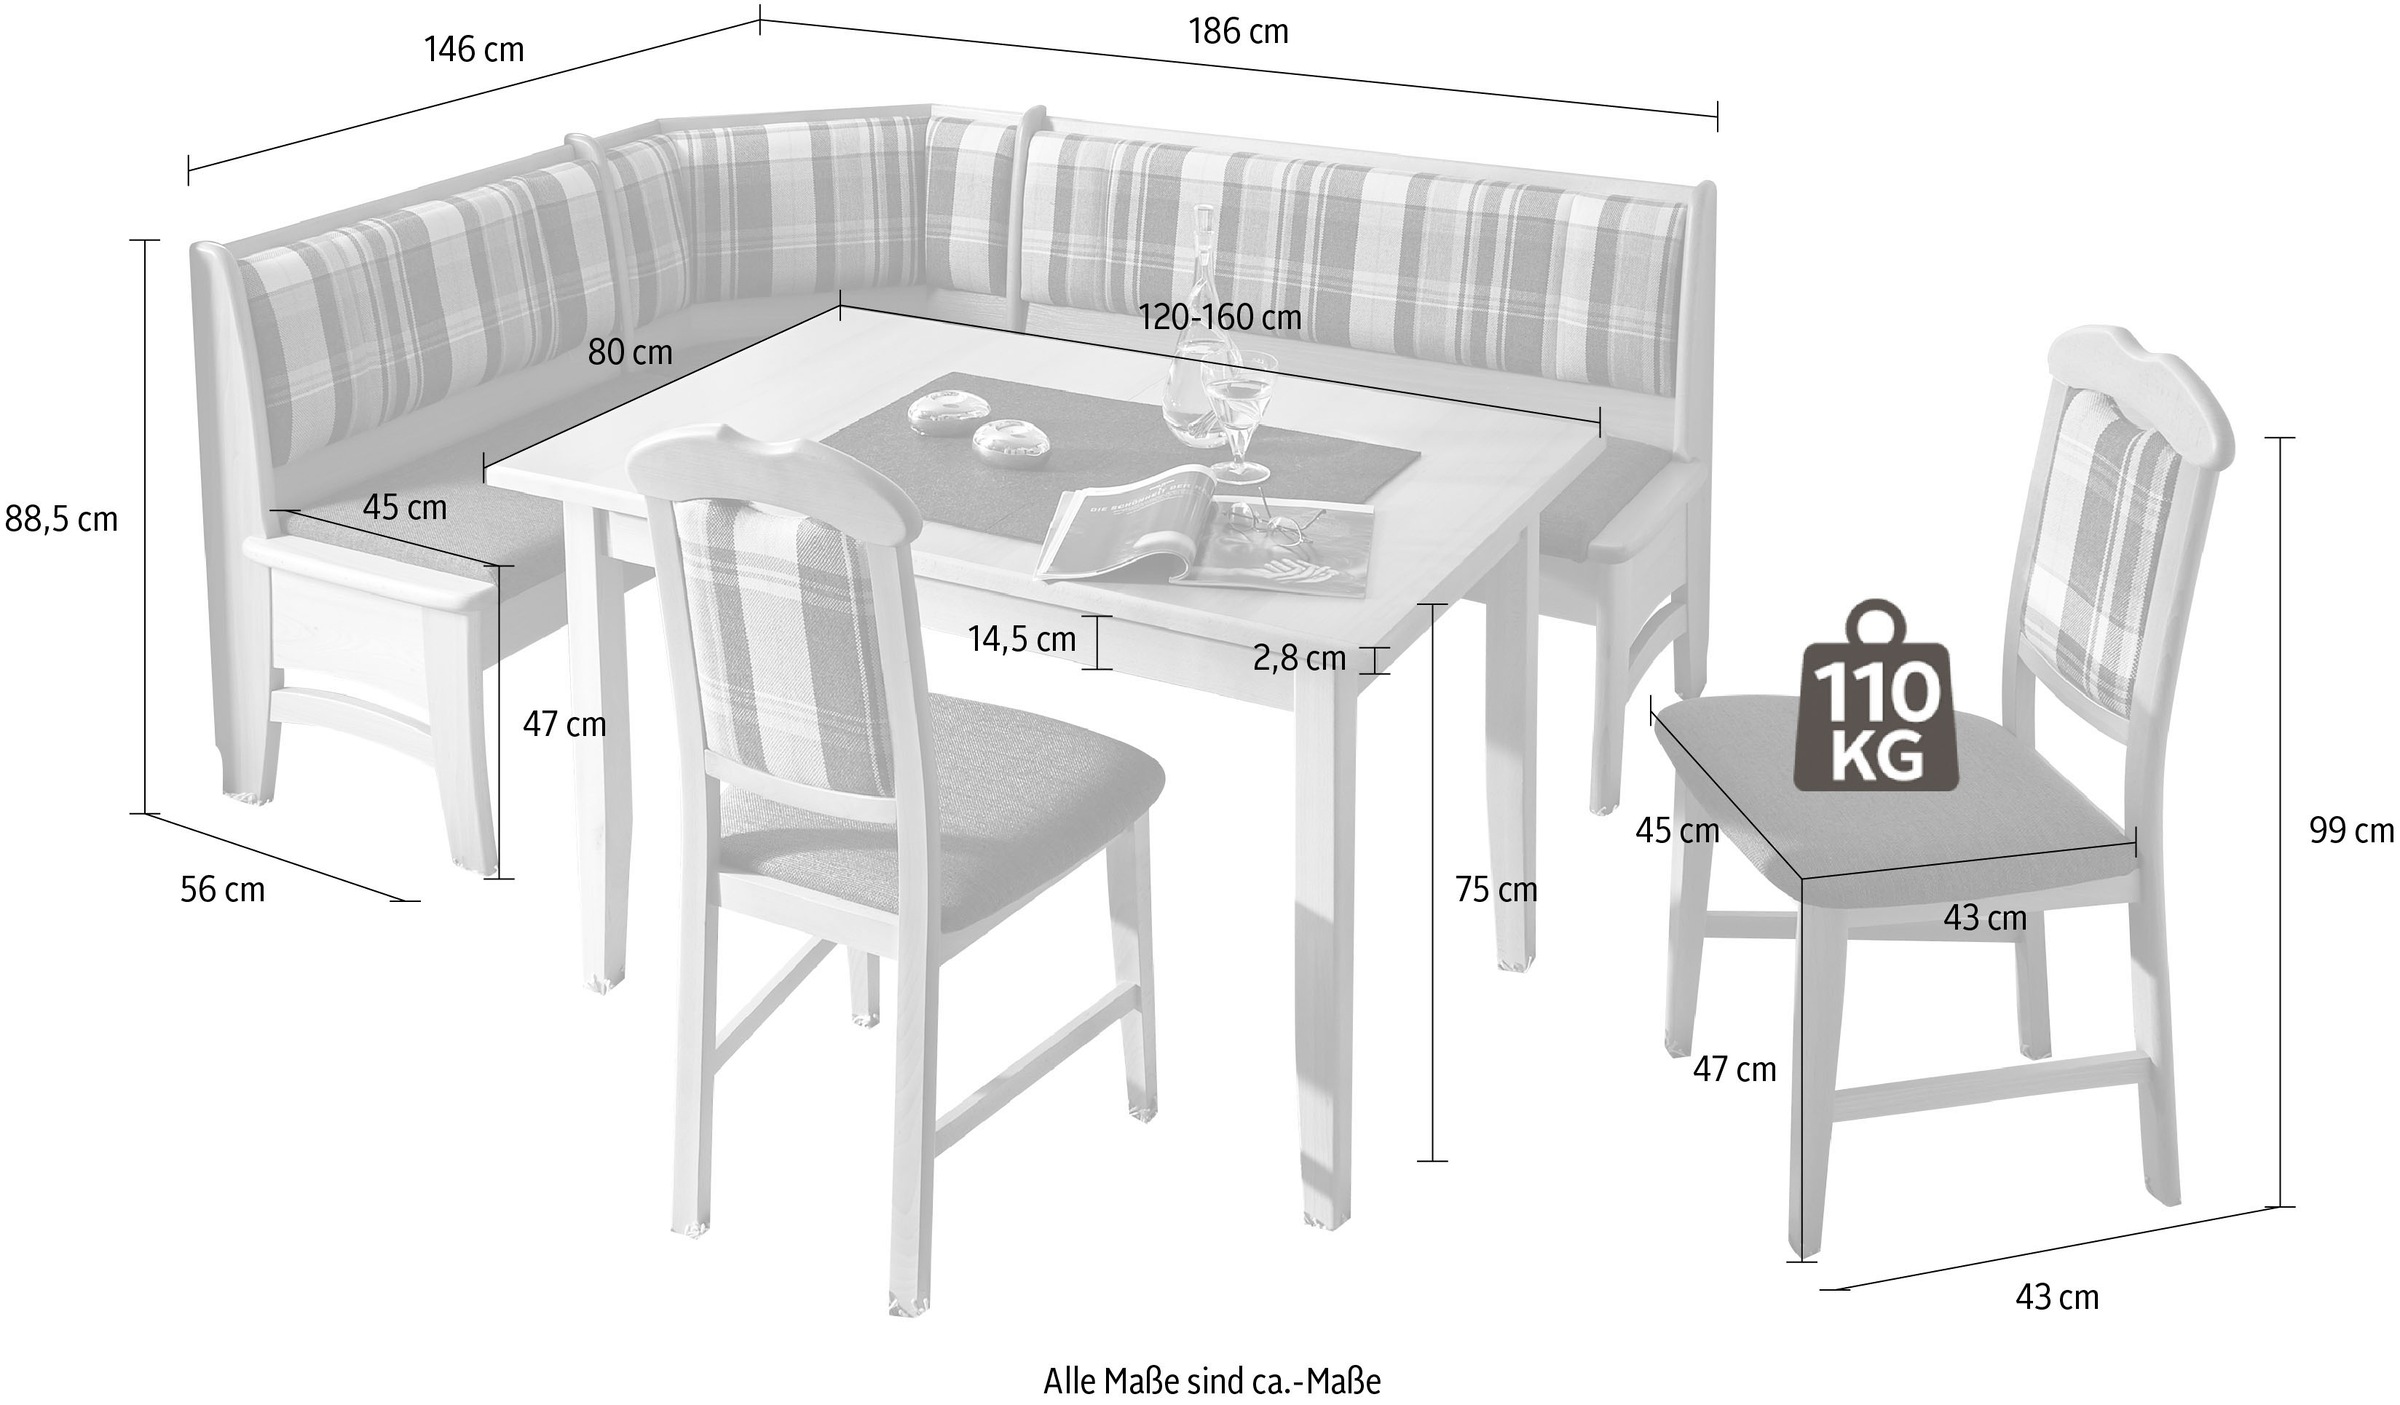 SCHÖSSWENDER Essgruppe »Tulln«, Eckbank ist umstellbar, hat eine Truhe, Tisch mit Auszug 120(160) cm